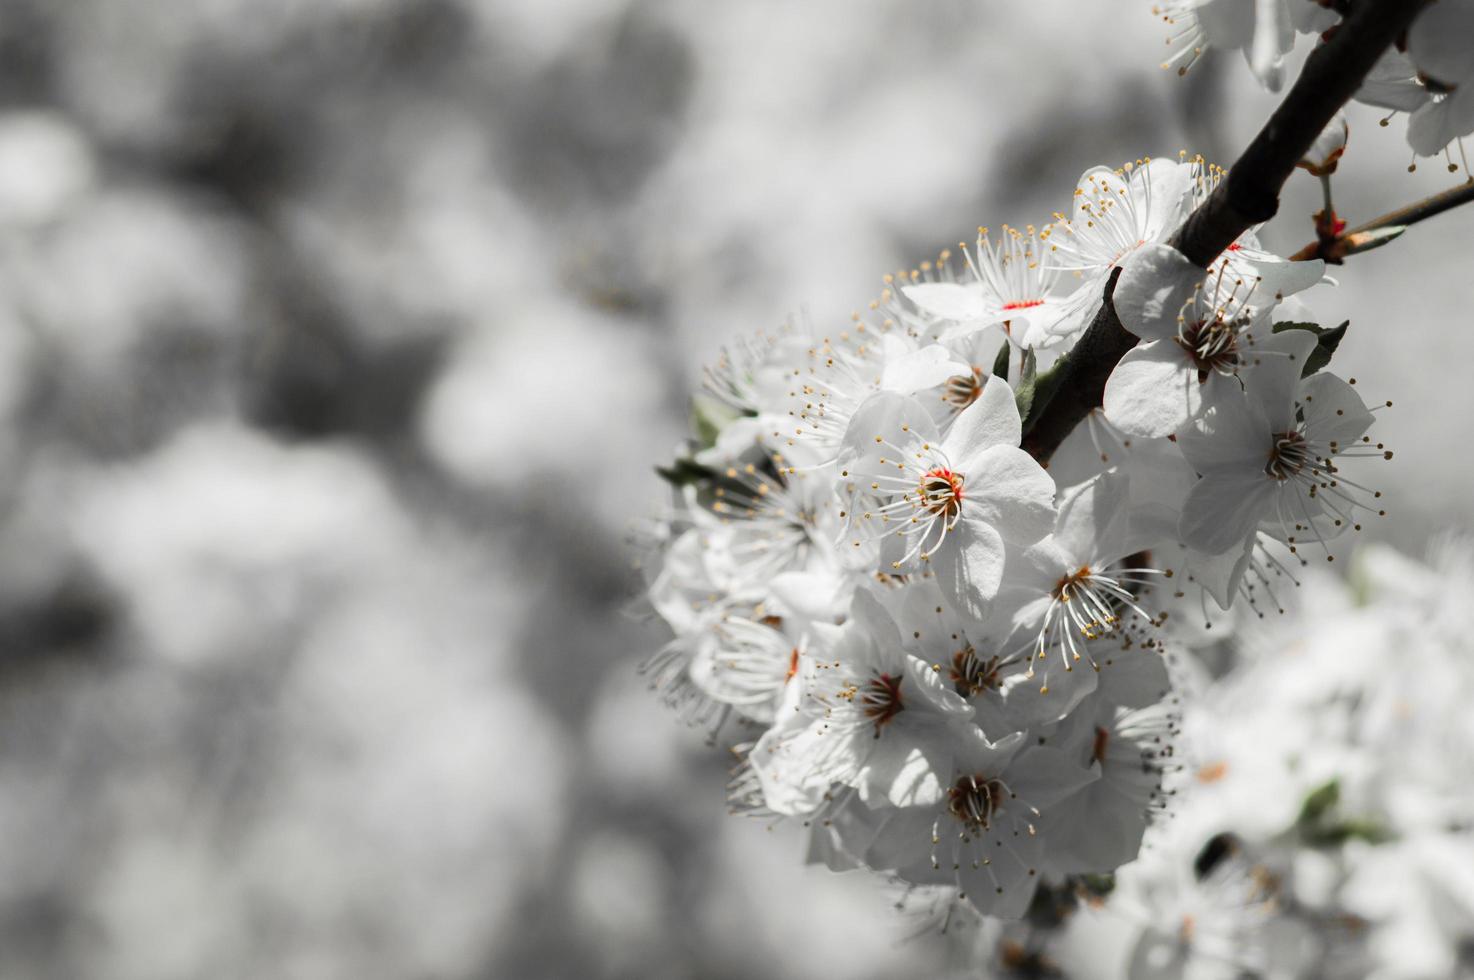 flores de cerejeira com pétalas brancas foto